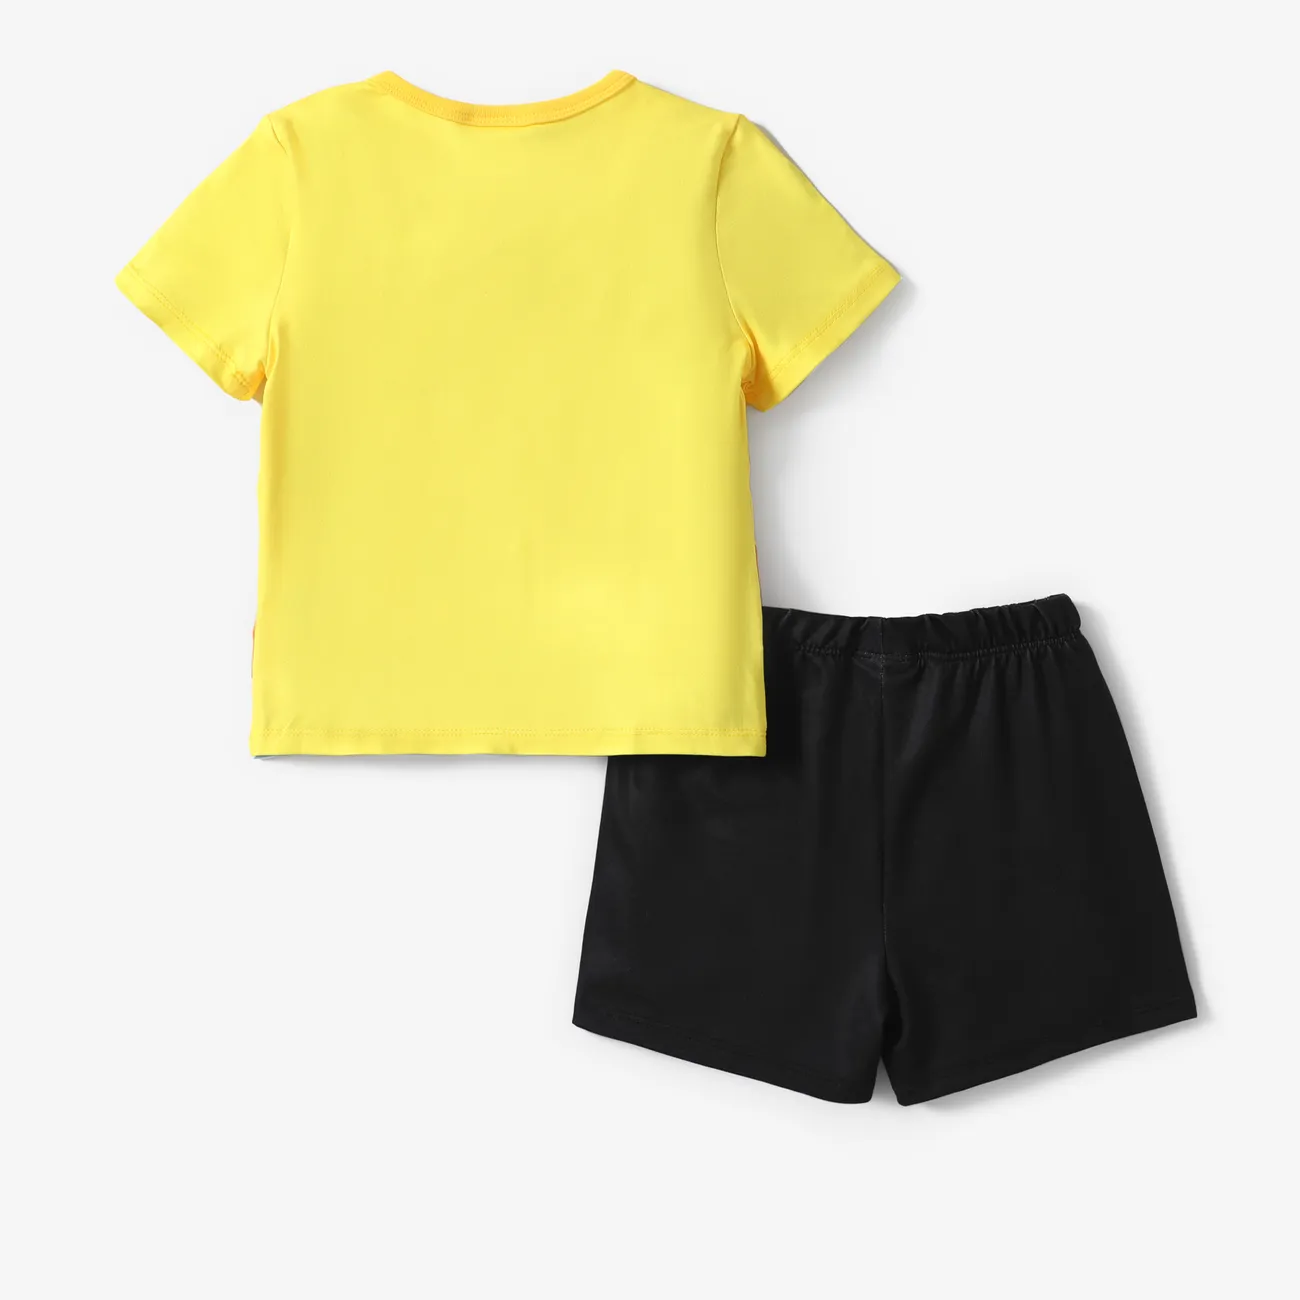 Helfer auf vier Pfoten 2 Stück Kleinkinder Unisex Kindlich T-Shirt-Sets gelb big image 1